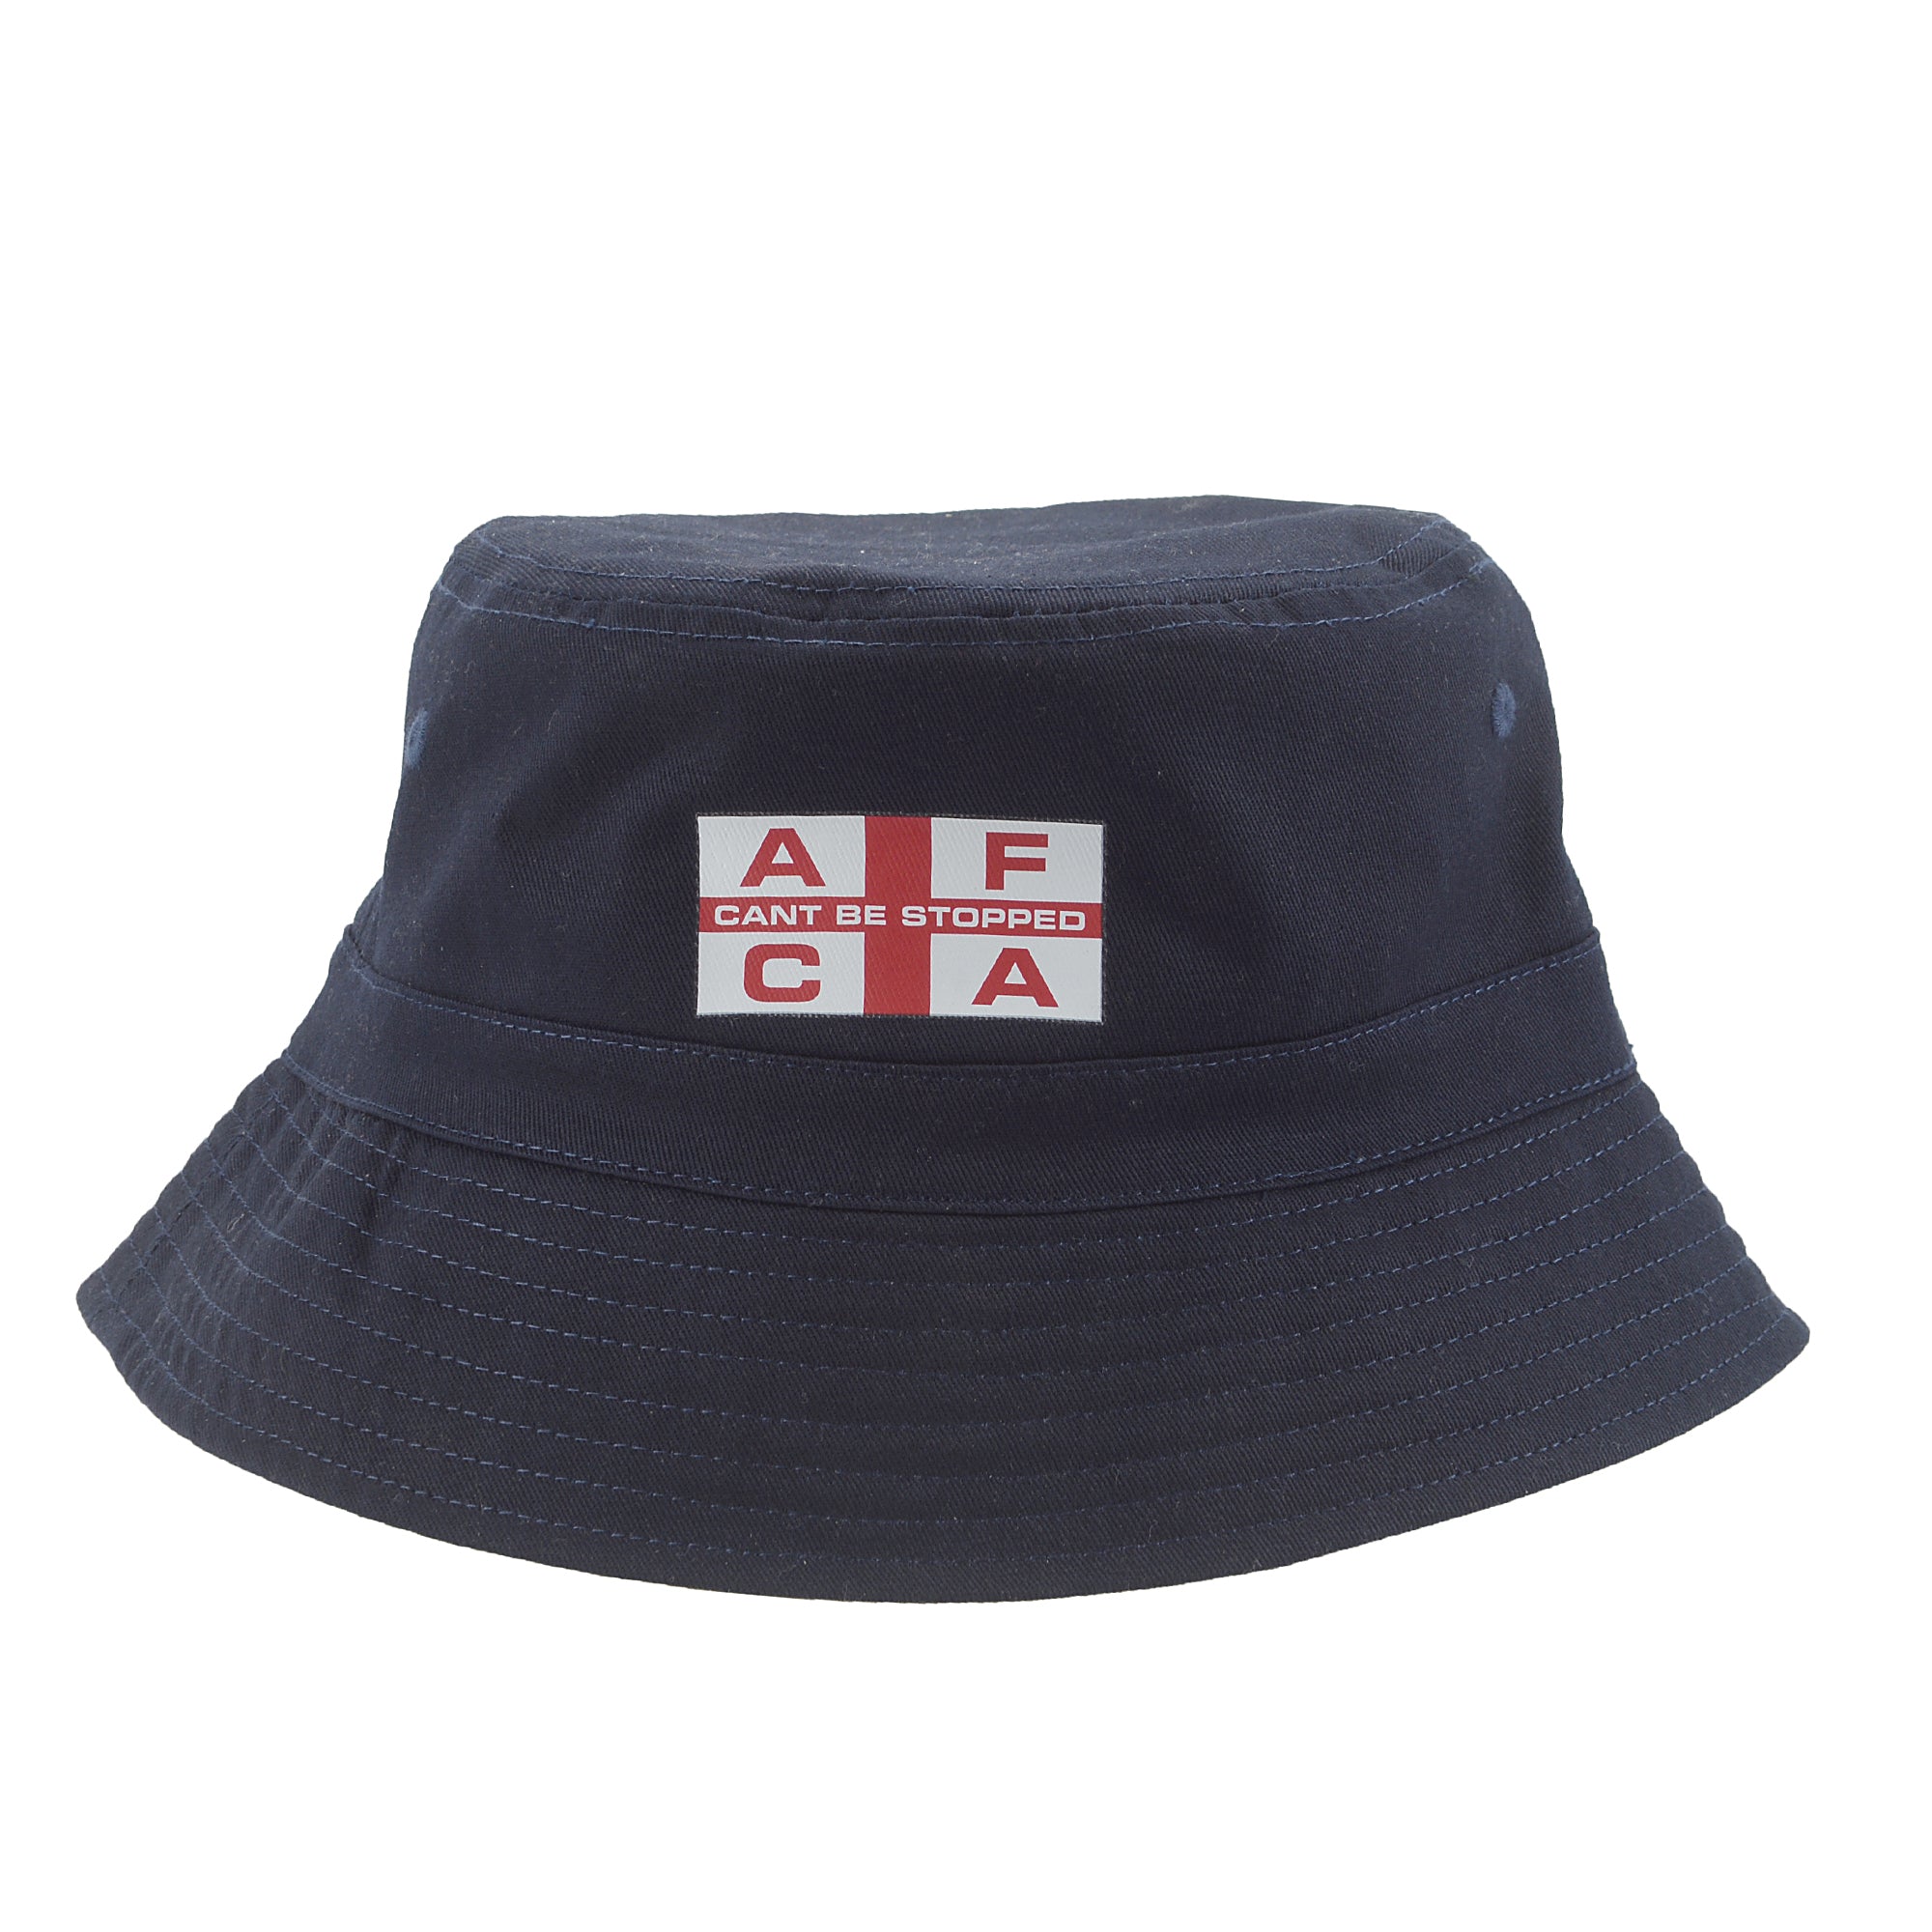 Bucket hat AFCA navy AFCA flag